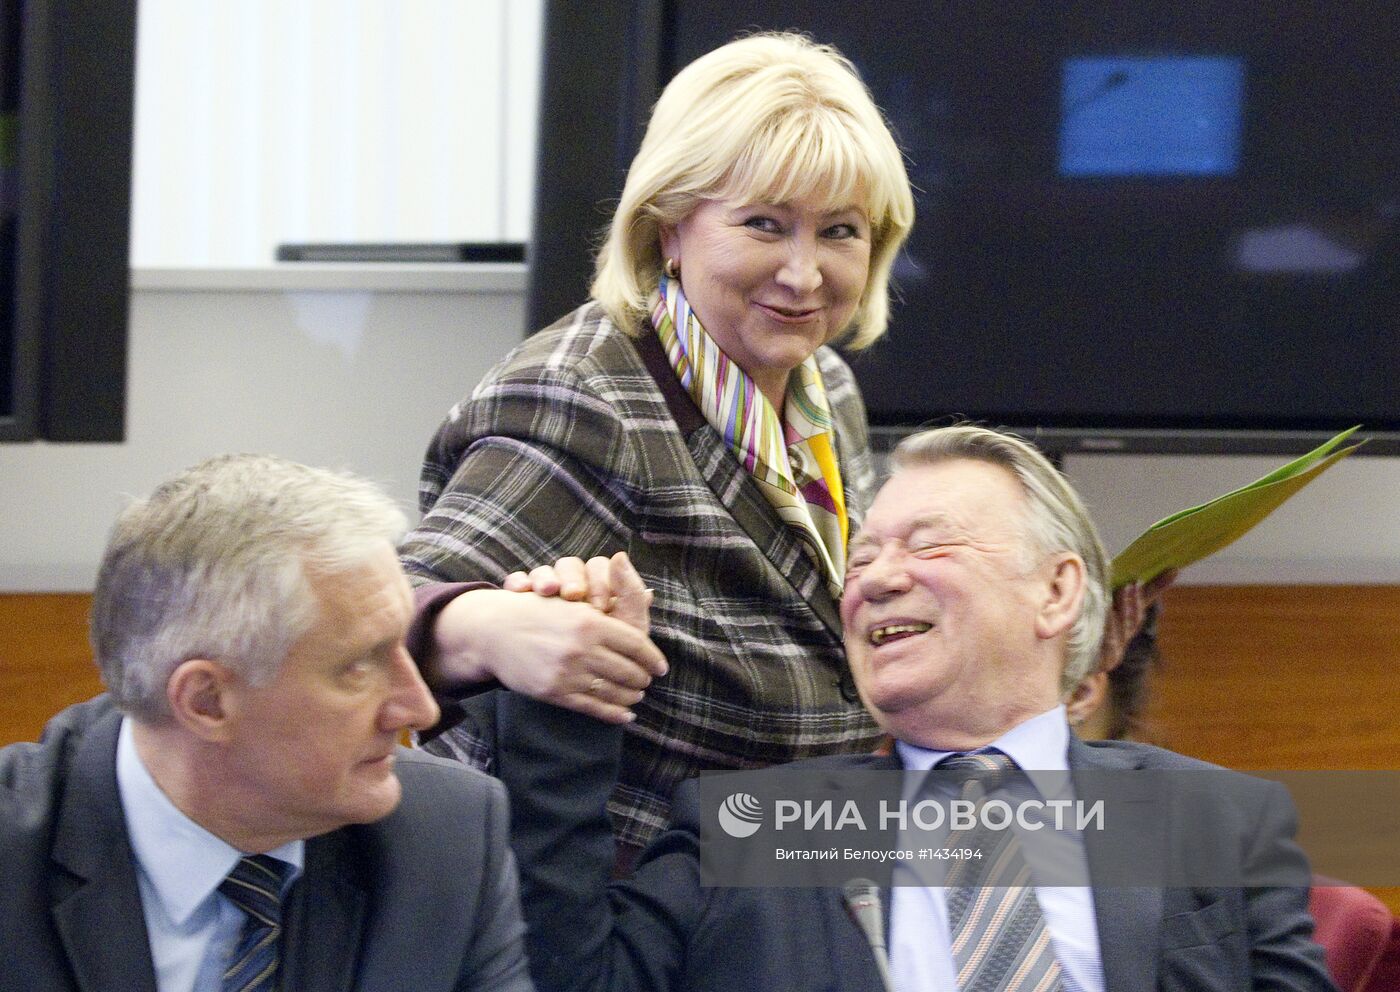 Заседание Центральной избирательной комиссии РФ